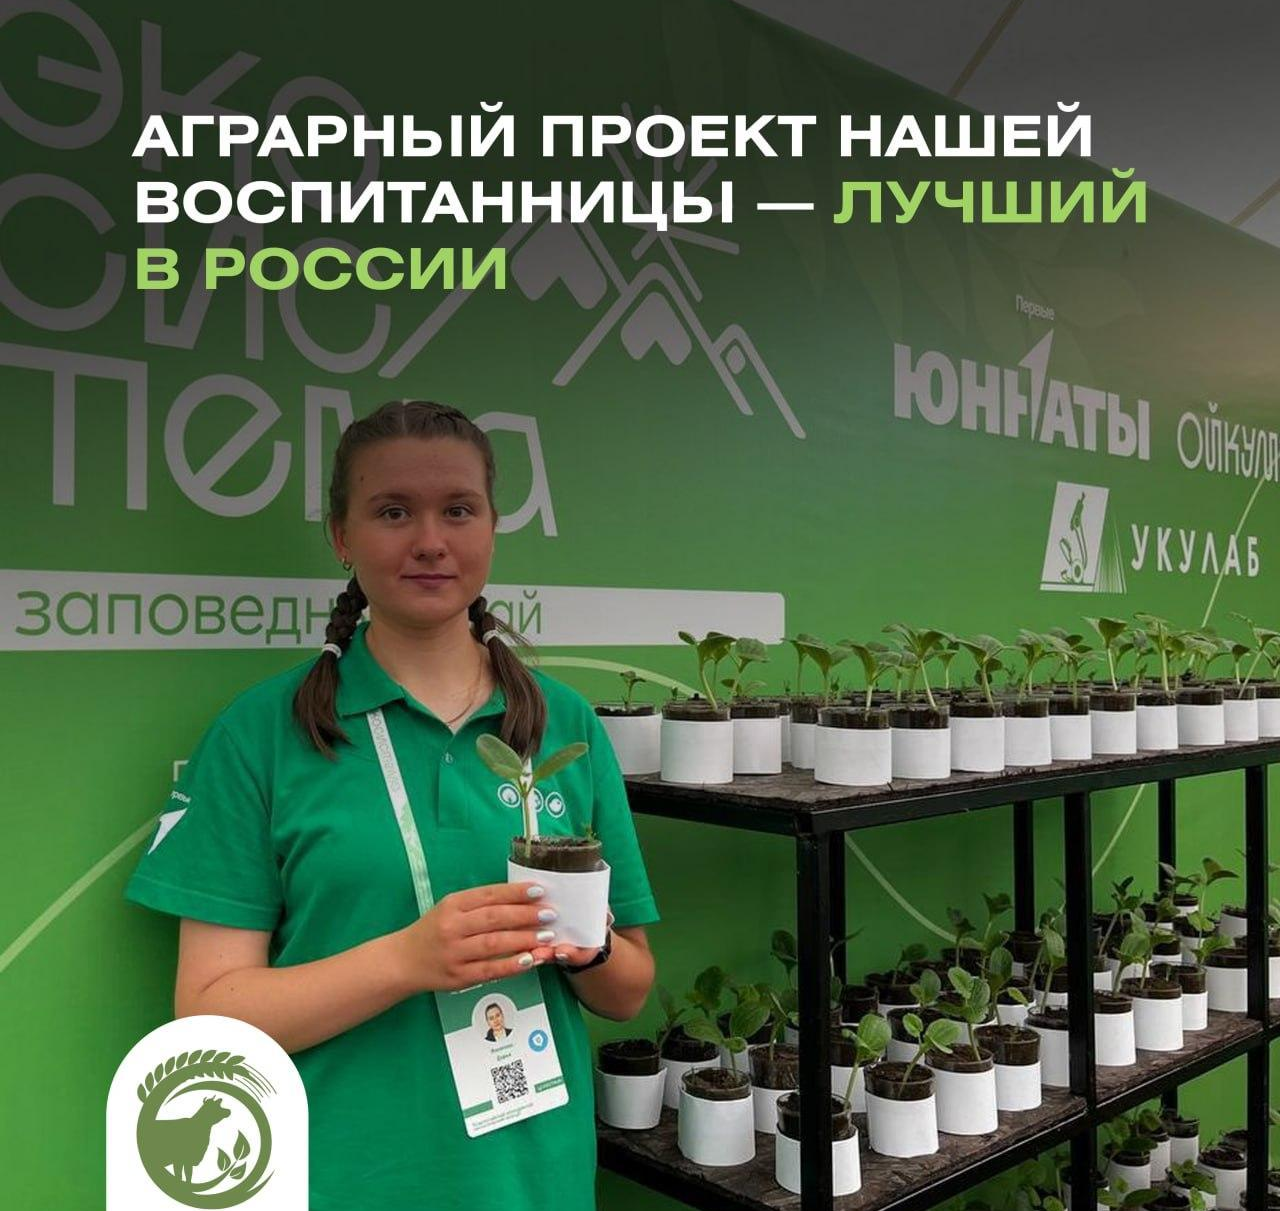 Аграрный проект ульяновской школьницы признан лучшим в России